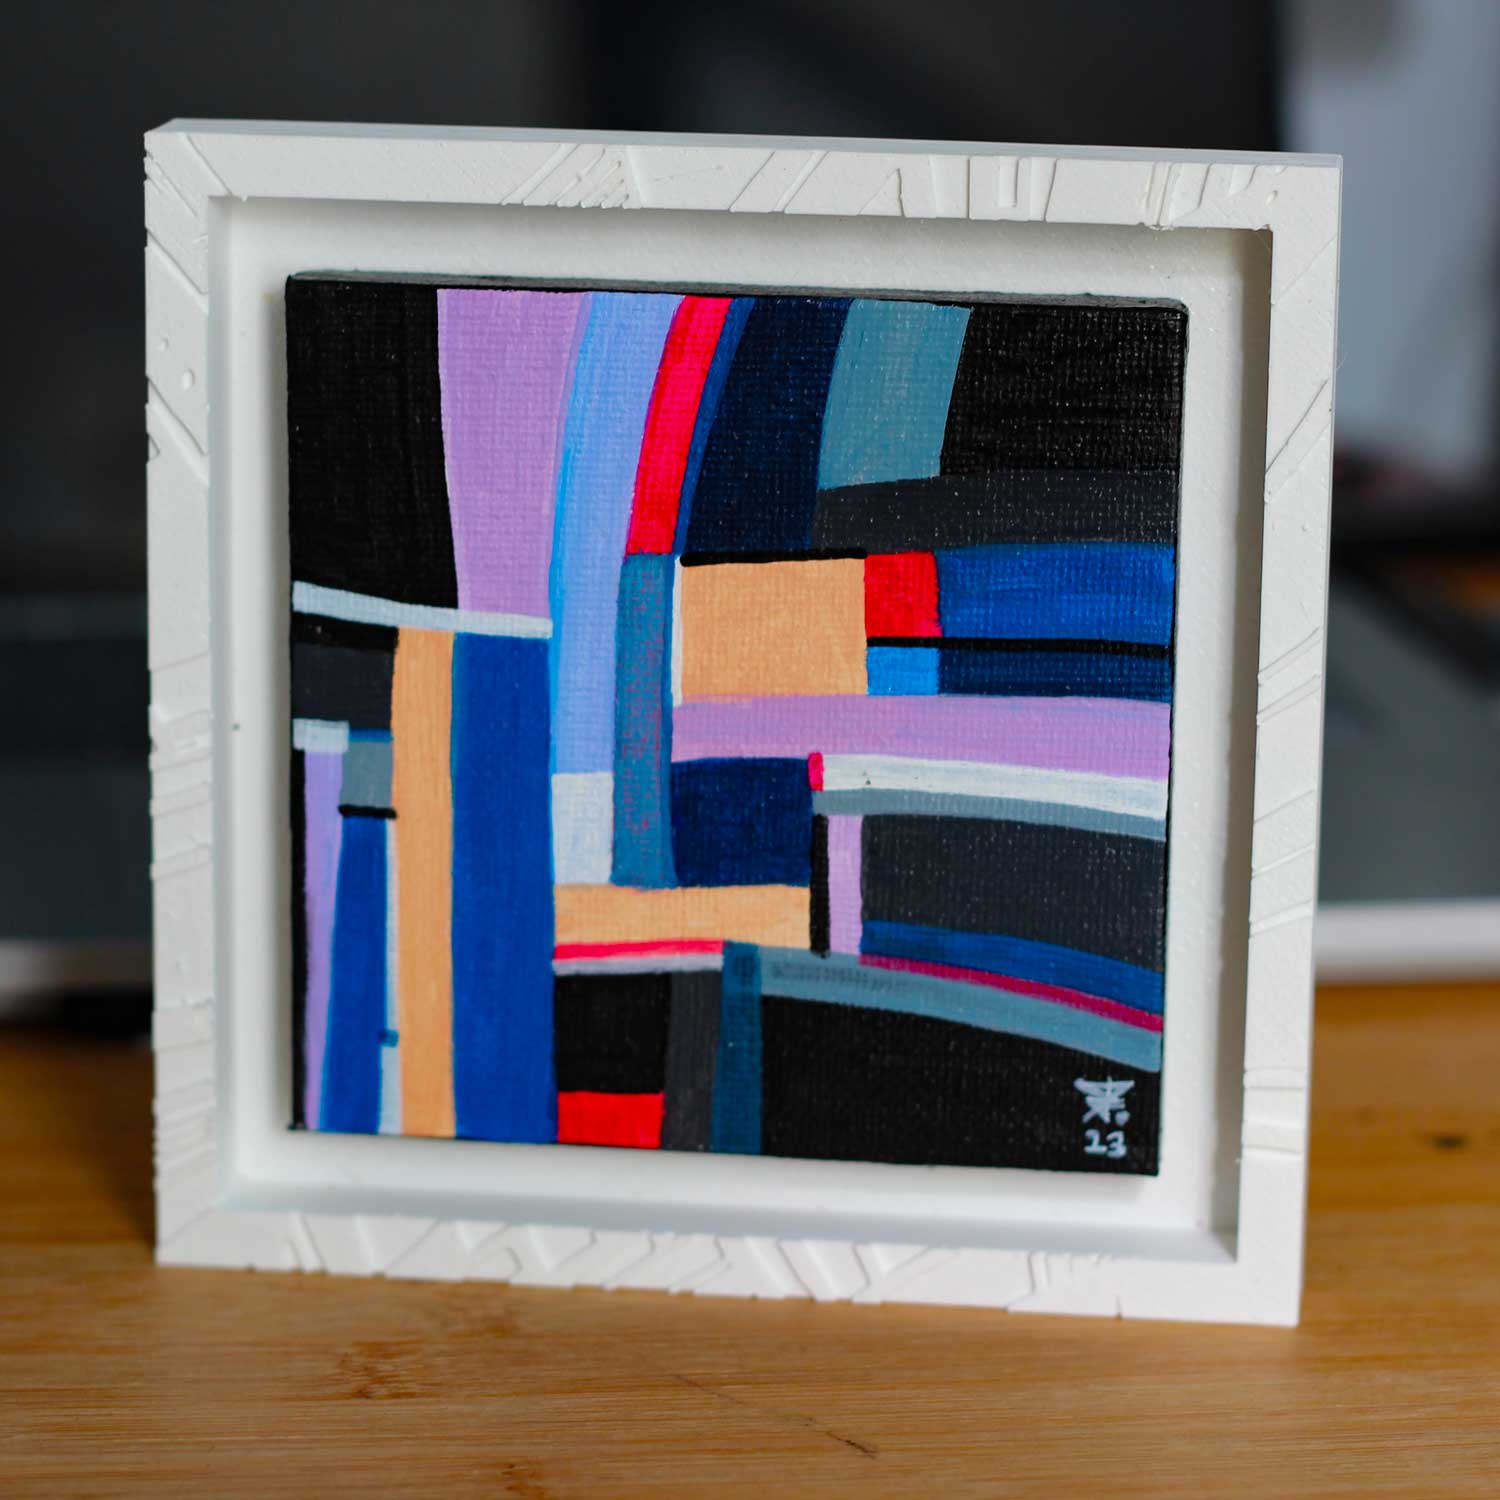 Découvrez "L'épi", une peinture abstraite colorée sur toile de 10x10cm, présentée dans sa caisse américaine. Cette œuvre apporte une touche de beauté à votre intérieur.